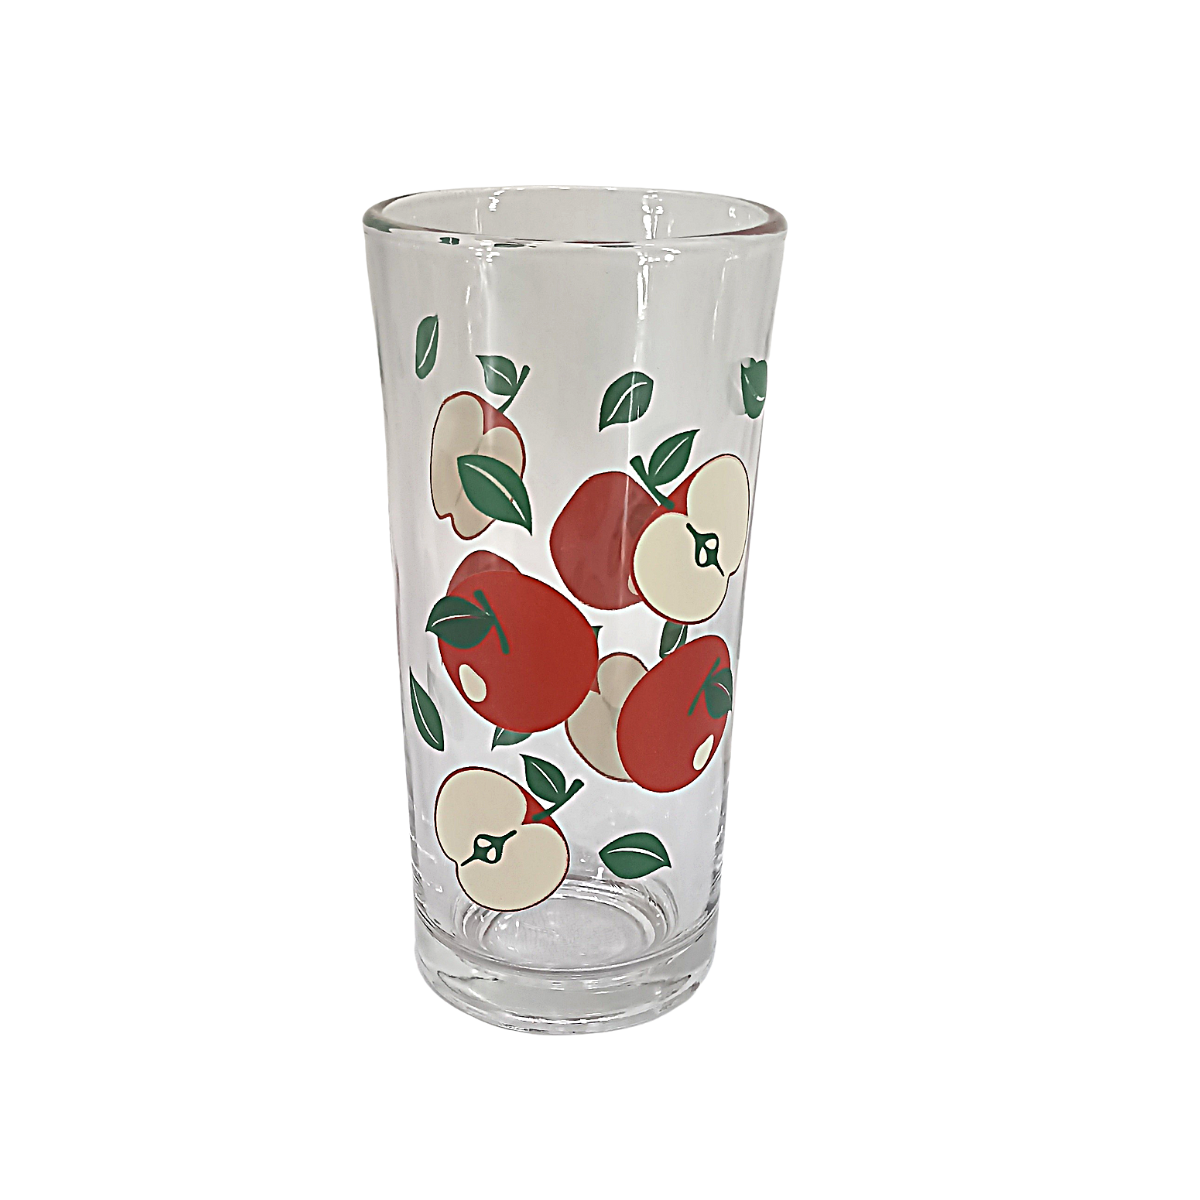 Juego de vasos de vidrio 6 piezas decorado Manzanas 1718049 Crisa - ANFORAMA (Todo para mi Cocina)